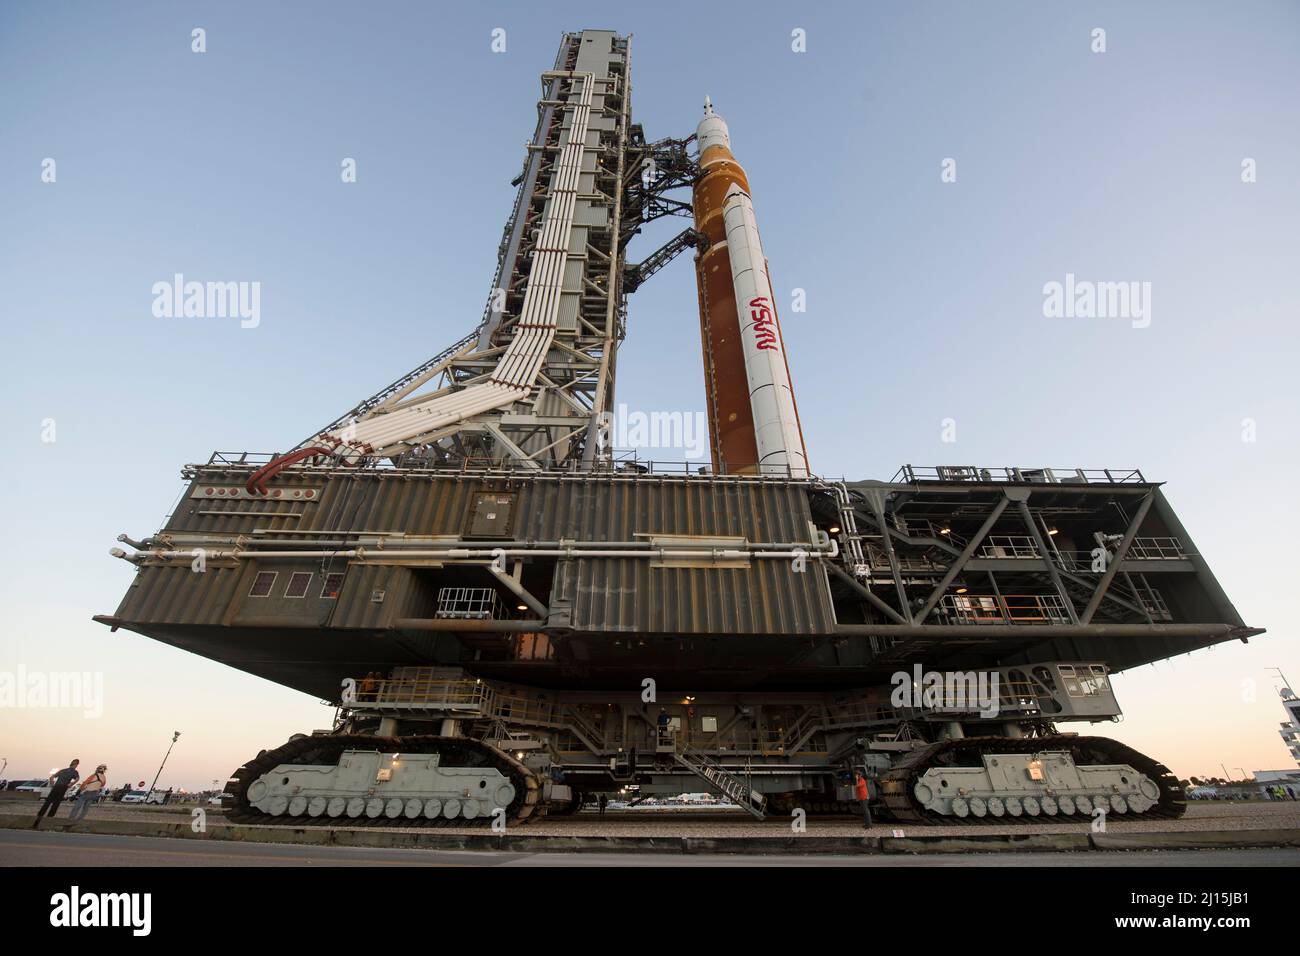 El cohete del Sistema de Lanzamiento Espacial (SLS) de la NASA con la nave espacial Orion a bordo se ve en la cima de un lanzador móvil mientras se lanza al Complejo de Lanzamiento 39B por primera vez, el jueves 17 de marzo de 2022, en el Centro Espacial Kennedy de la NASA en Florida. Antes de la prueba de vuelo Artemis I de la NASA, el cohete SLS y la nave espacial Orion totalmente apilados e integrados se someterán a un ensayo de vestido húmedo en el Complejo de Lanzamiento 39B para verificar los sistemas y practicar los procedimientos de cuenta atrás para el primer lanzamiento. Crédito de la foto: (NASA/Aubrey Gemignani) Foto de stock